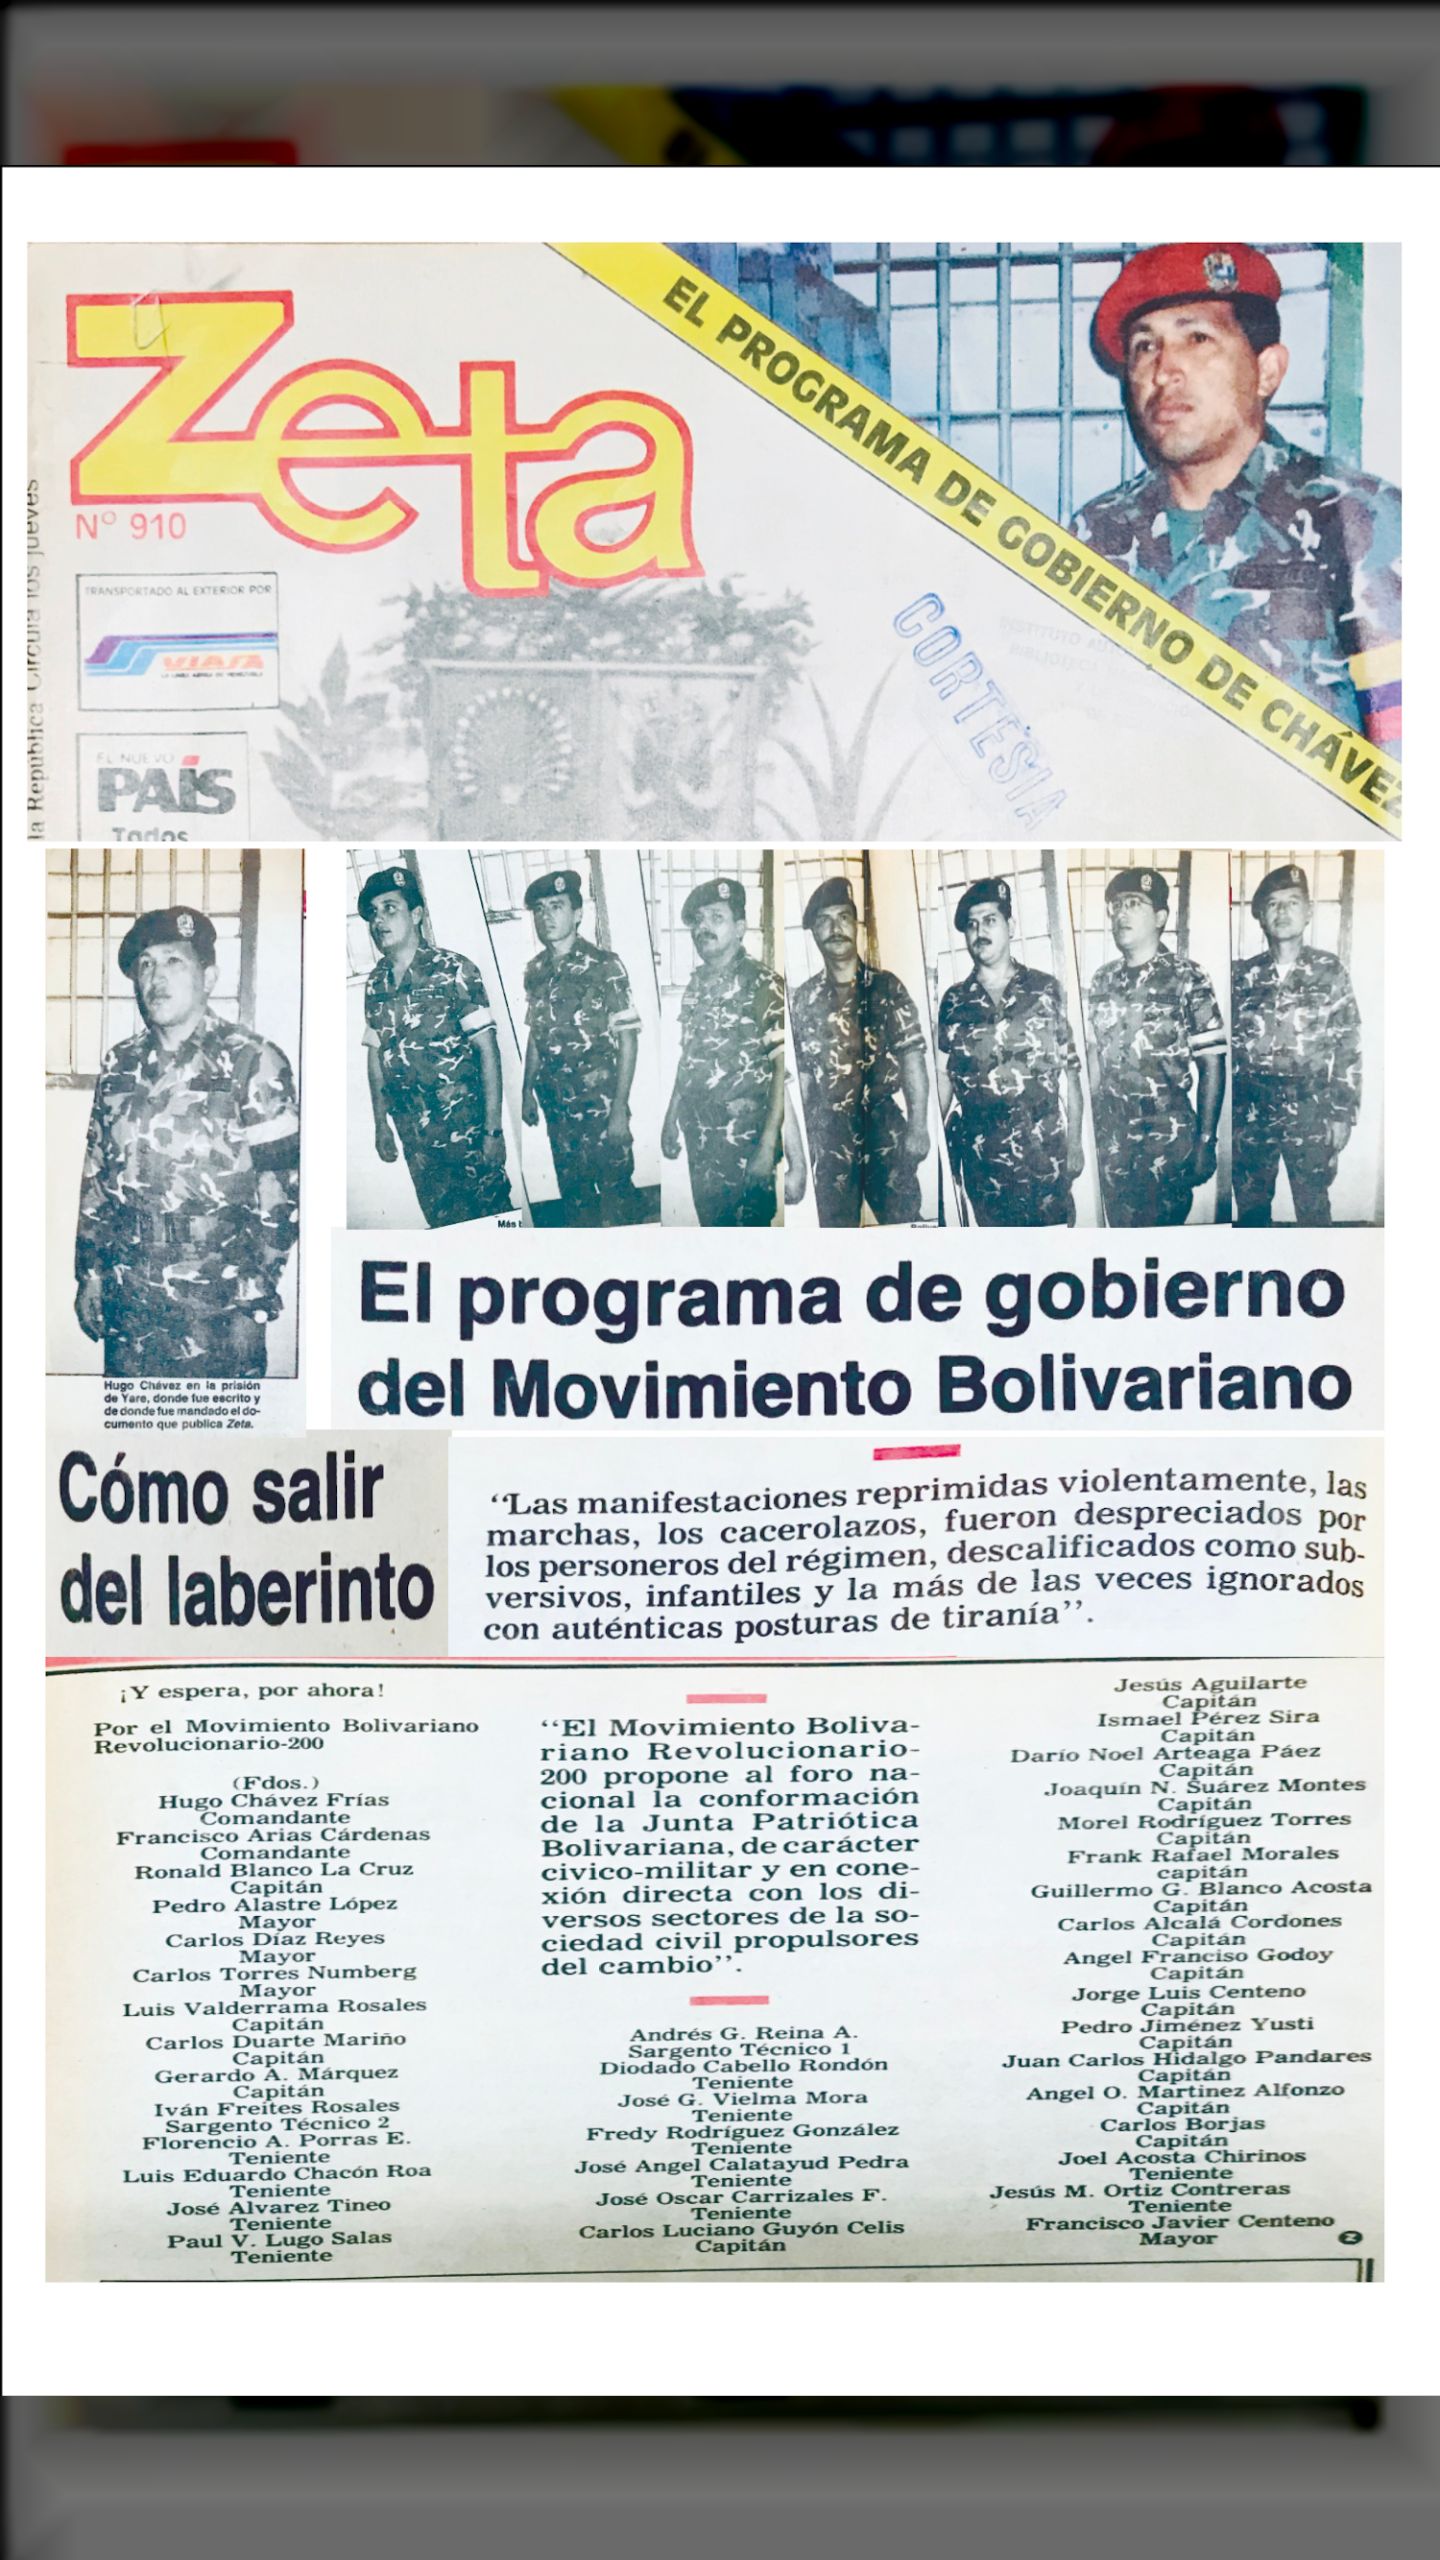 EL PROGRAMA DE GOBIERNO DEL MBR-200 (Revista ZETA,  24 de agosto 1992)